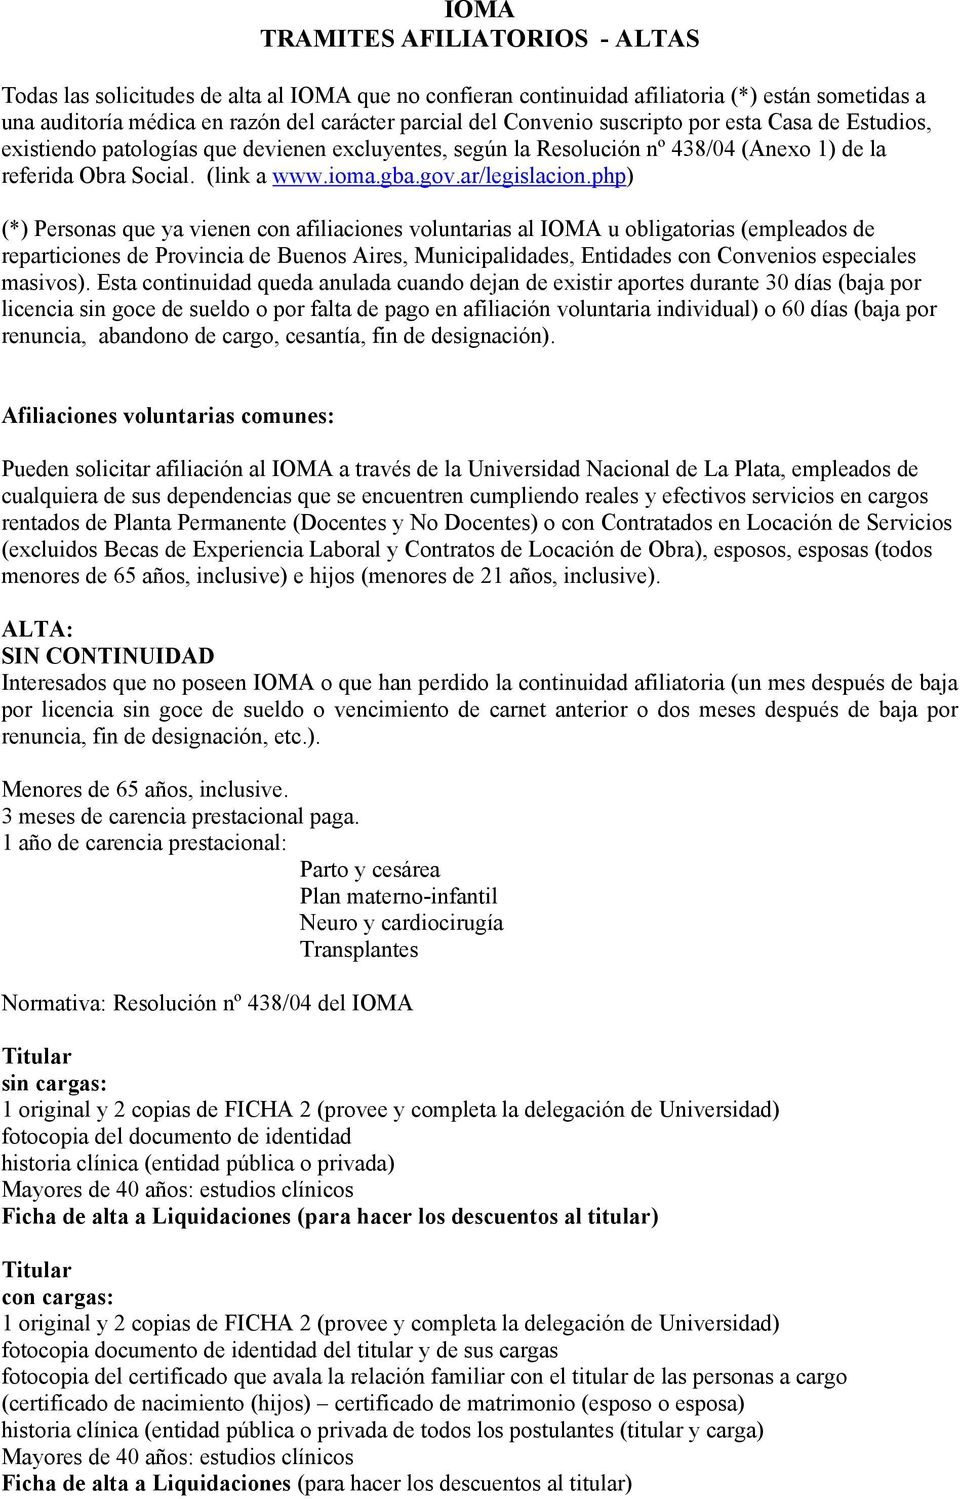 php) (*) Personas que ya vienen con afiliaciones voluntarias al IOMA u obligatorias (empleados de reparticiones de Provincia de Buenos Aires, Municipalidades, Entidades con Convenios especiales